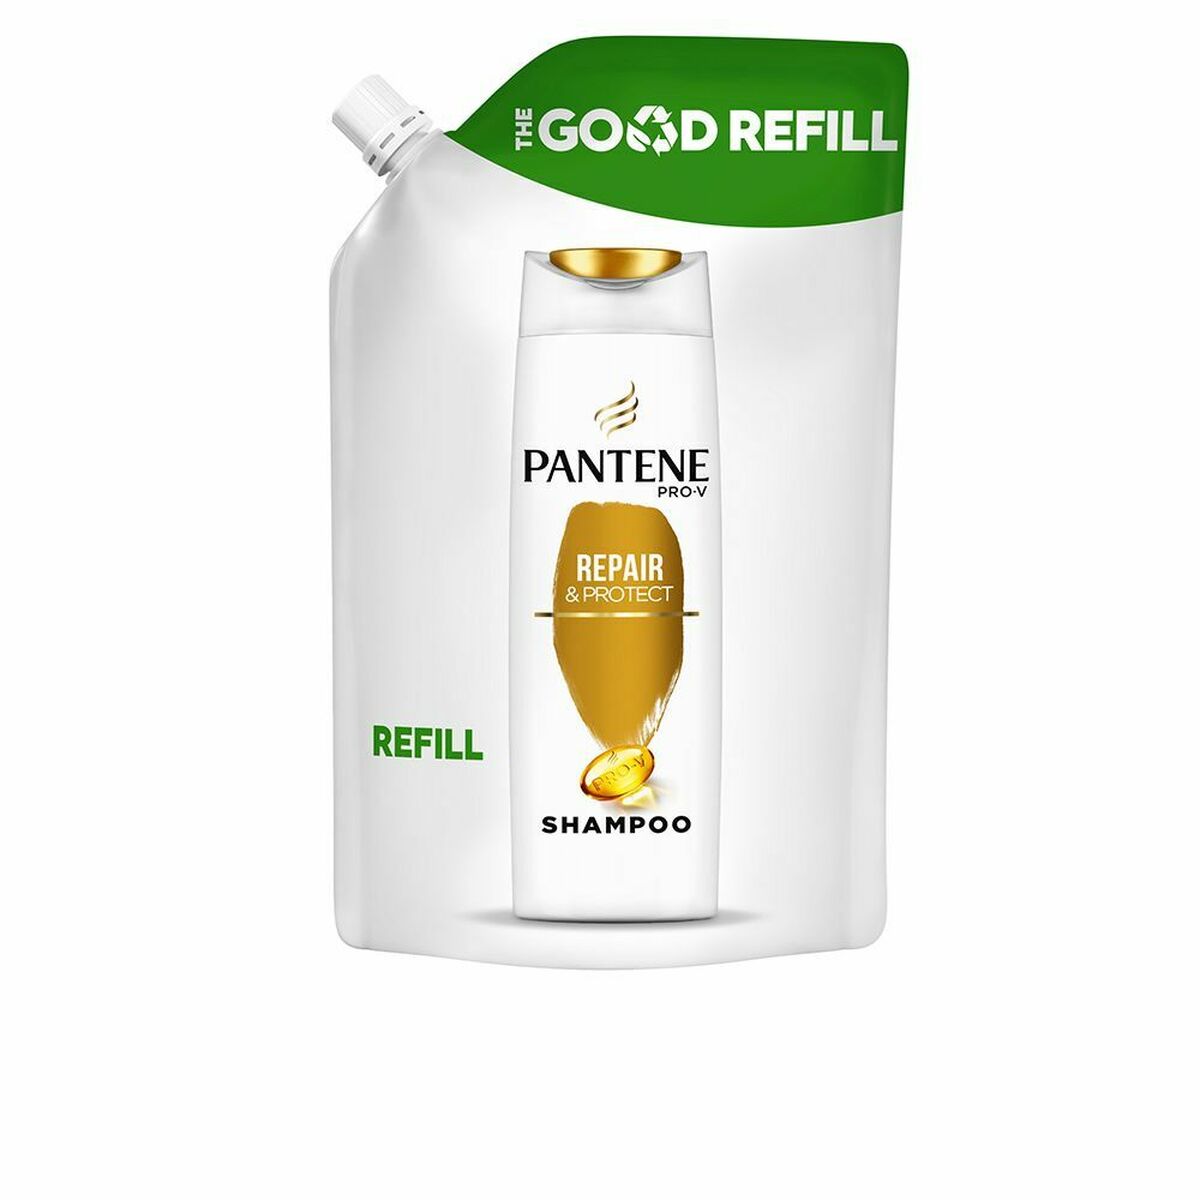 Champú Pantene Repair & Protect Good Refill (480 ml)